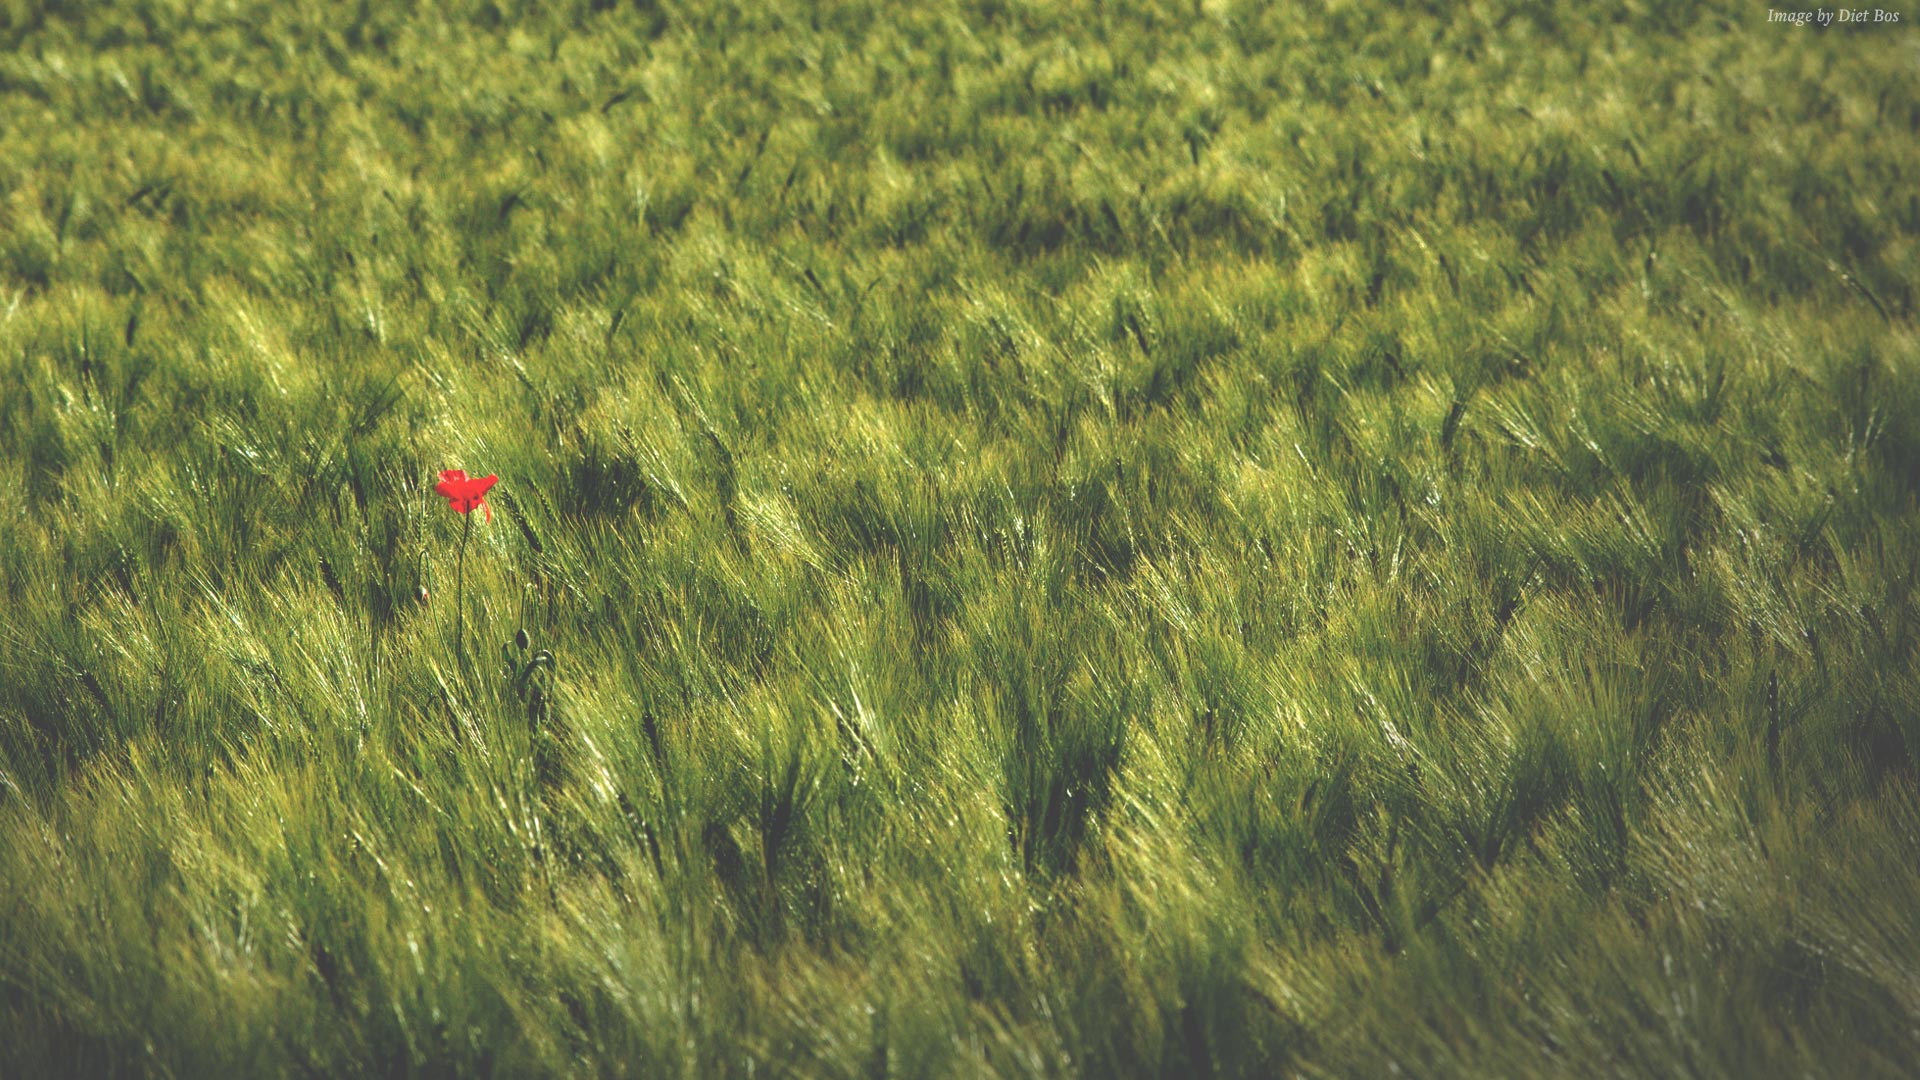 Red flower in a field